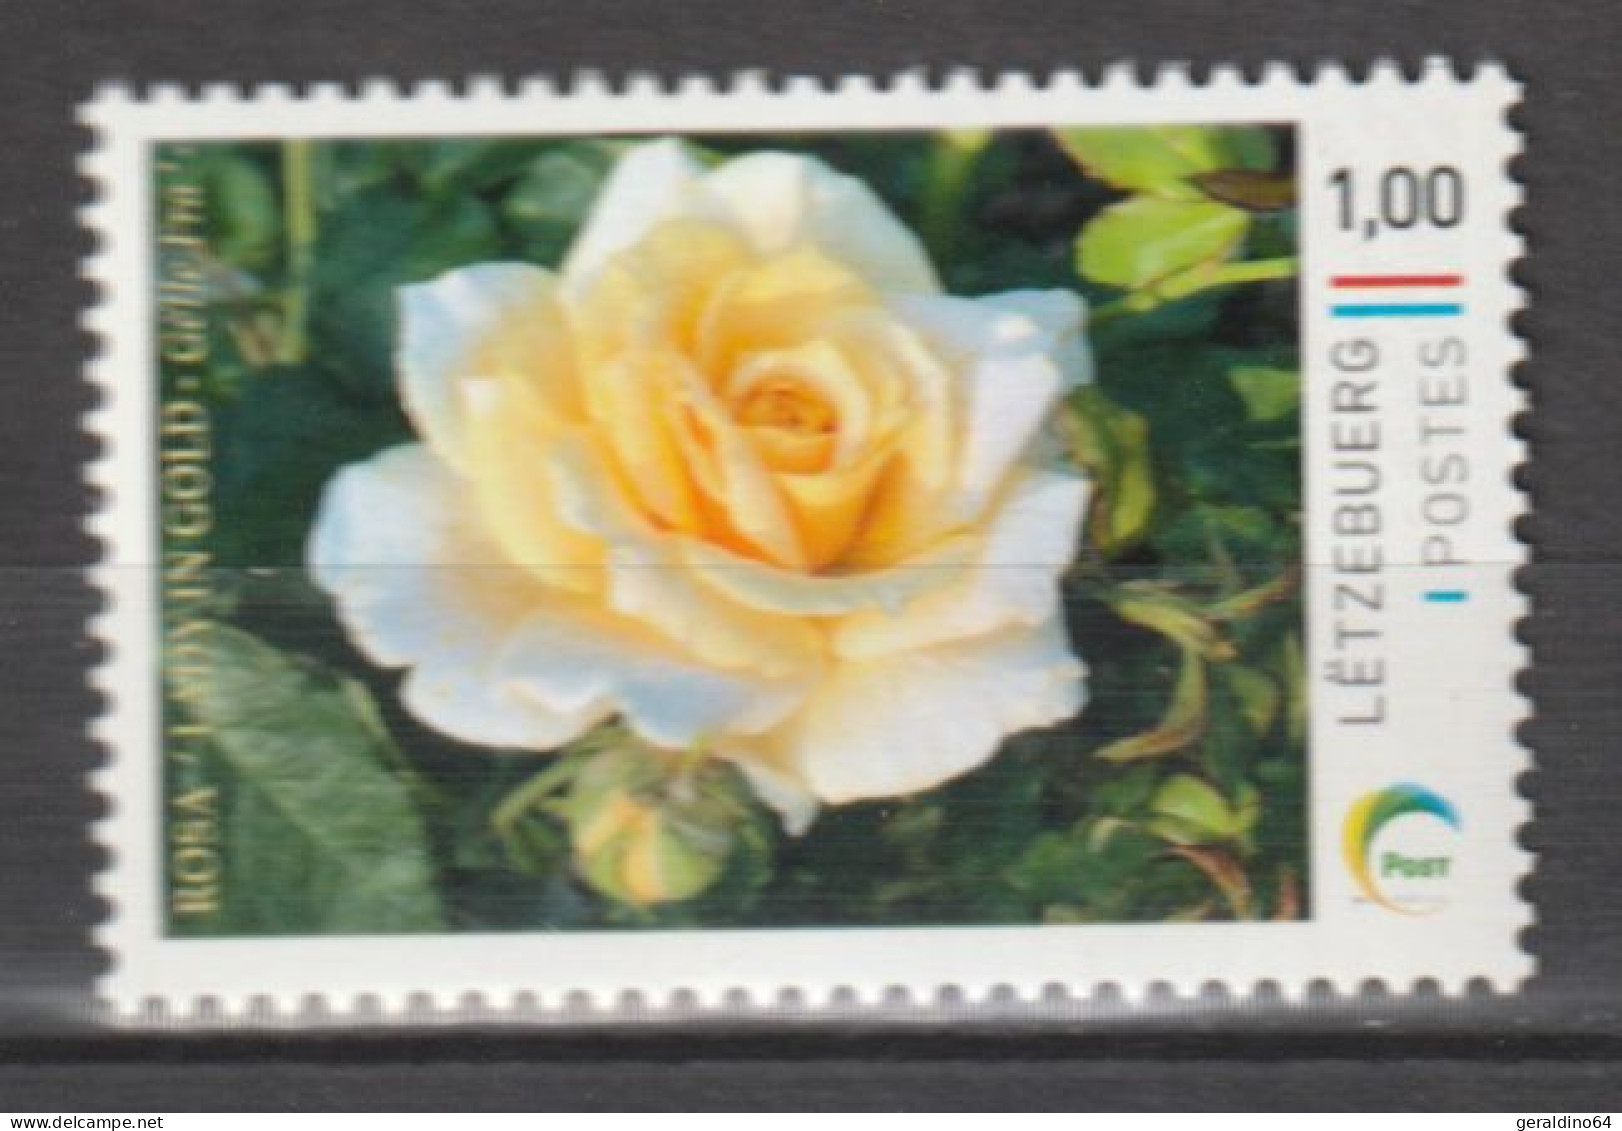 Luxemburg 2023 Personalisierte Briefmarke Rose Lady In Gold ** Postfrisch MNH - Unused Stamps